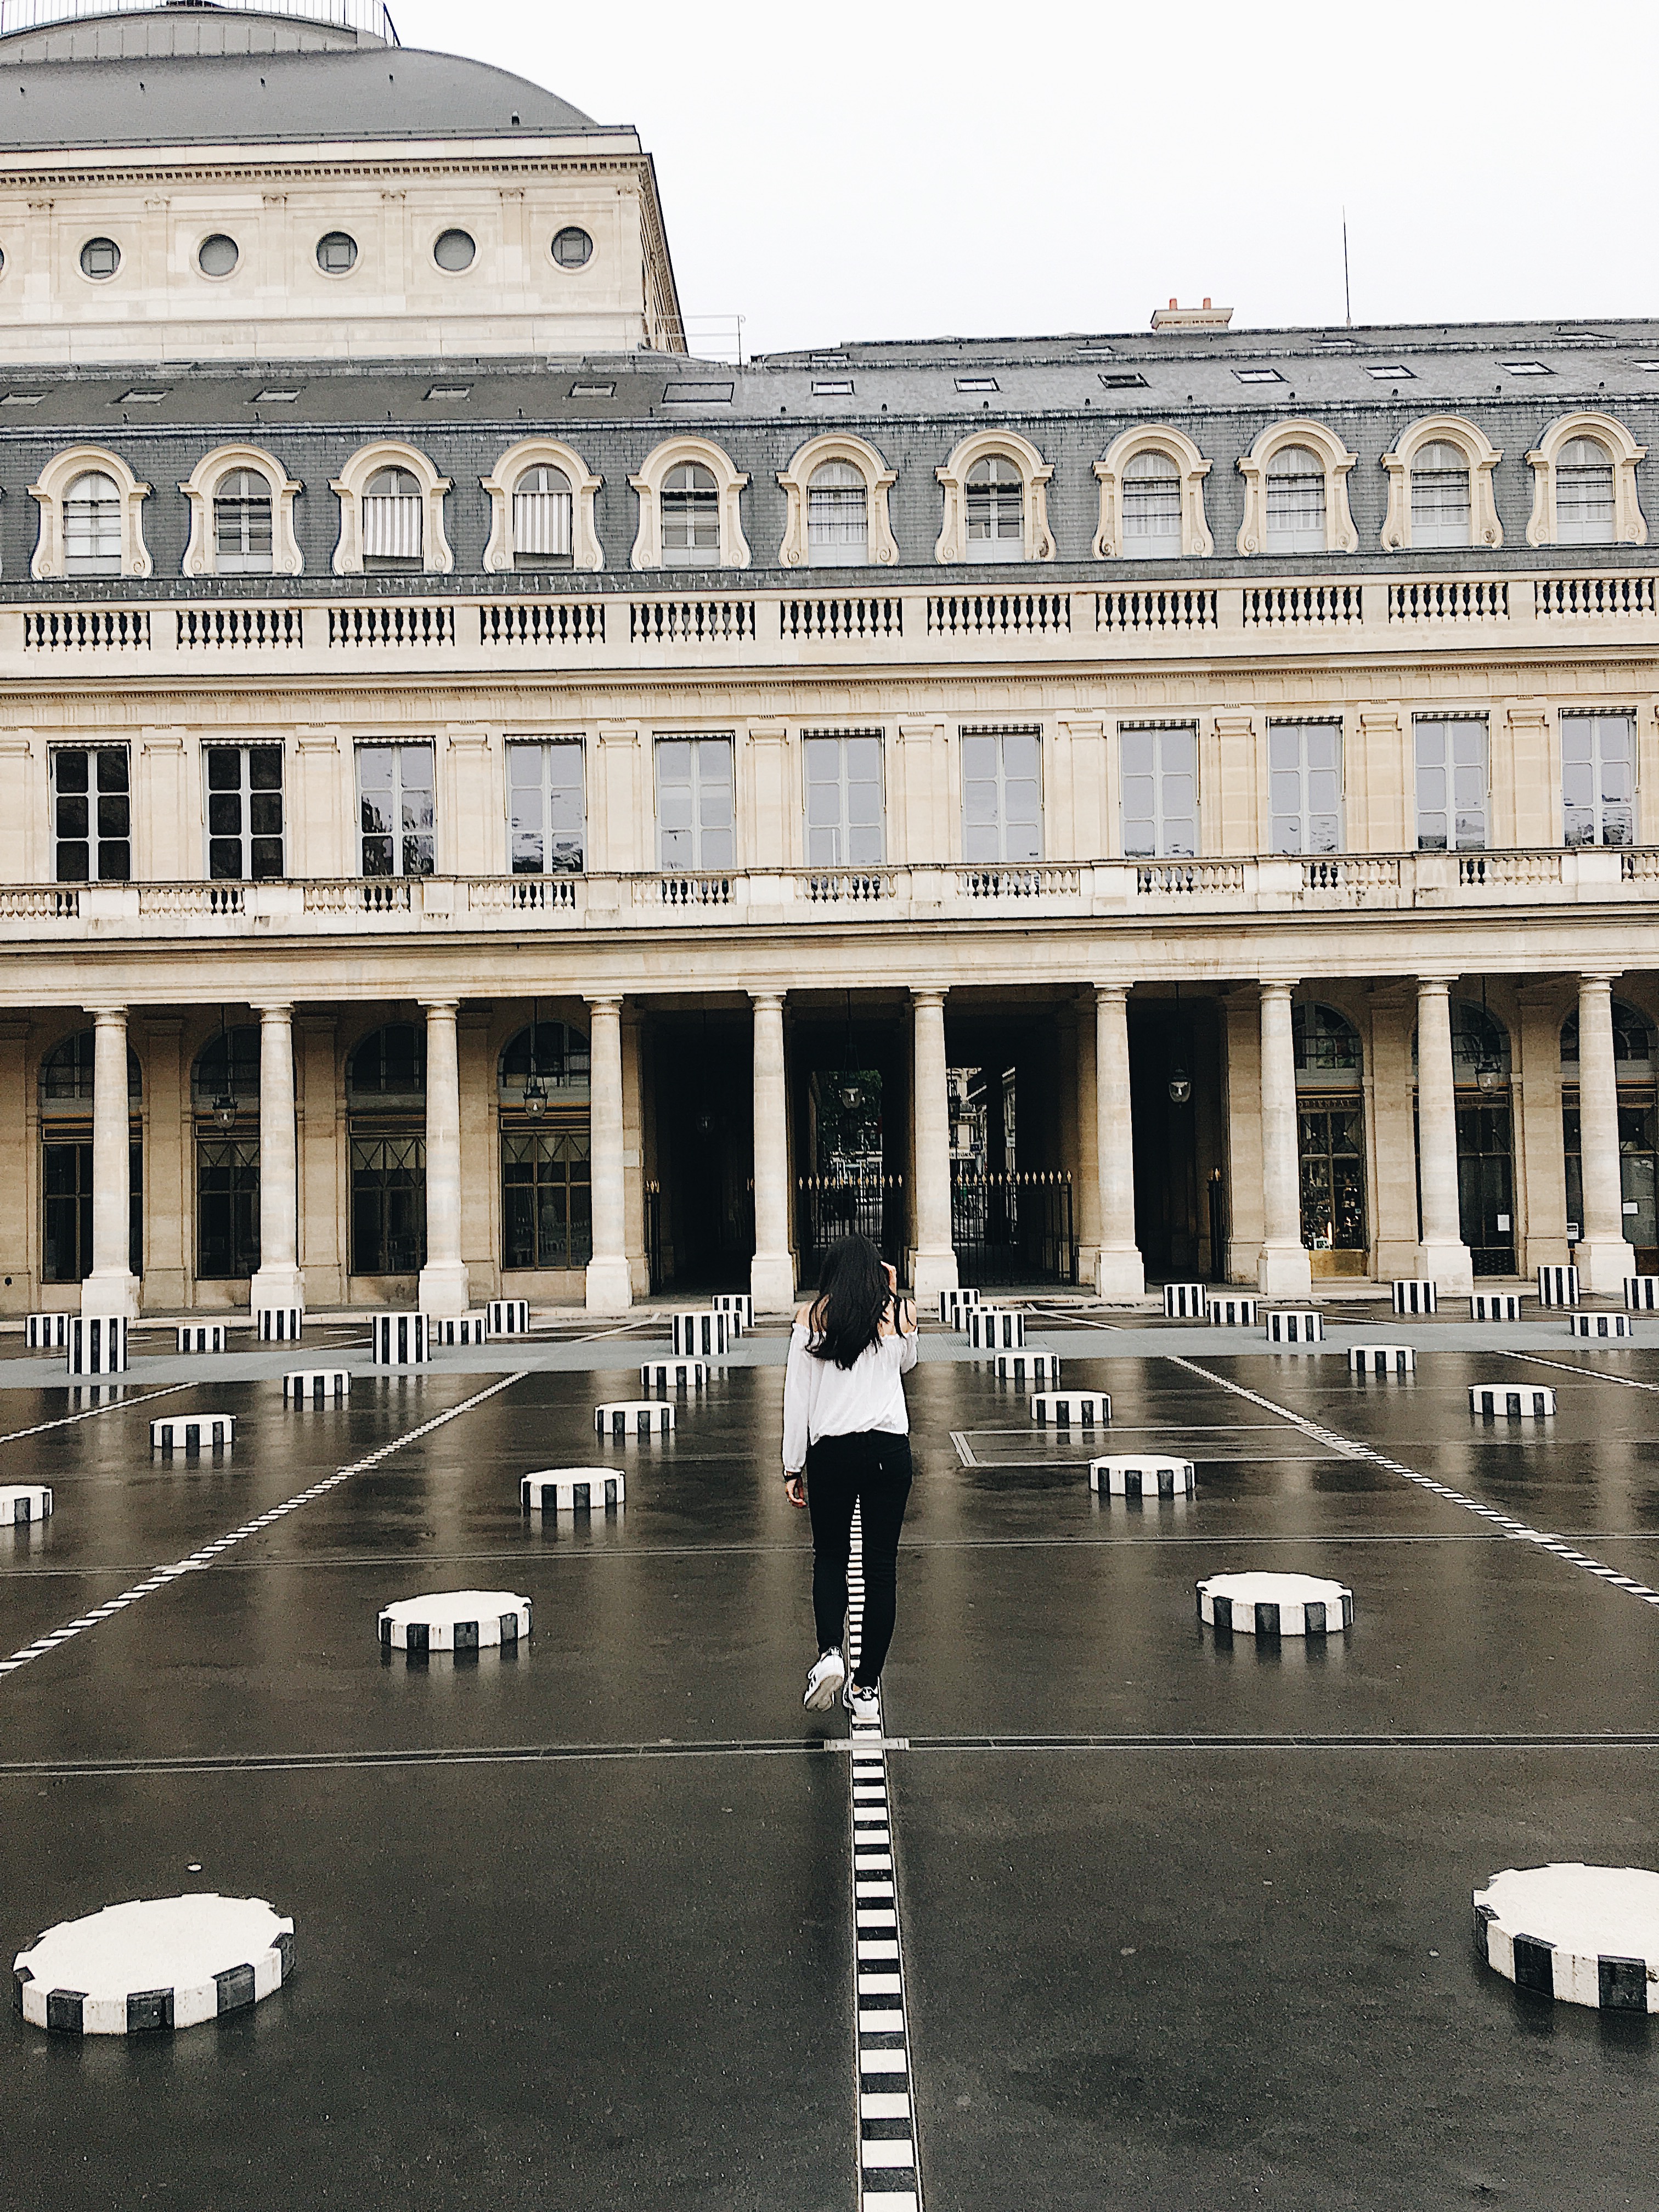 Les Palais Royal in Paris